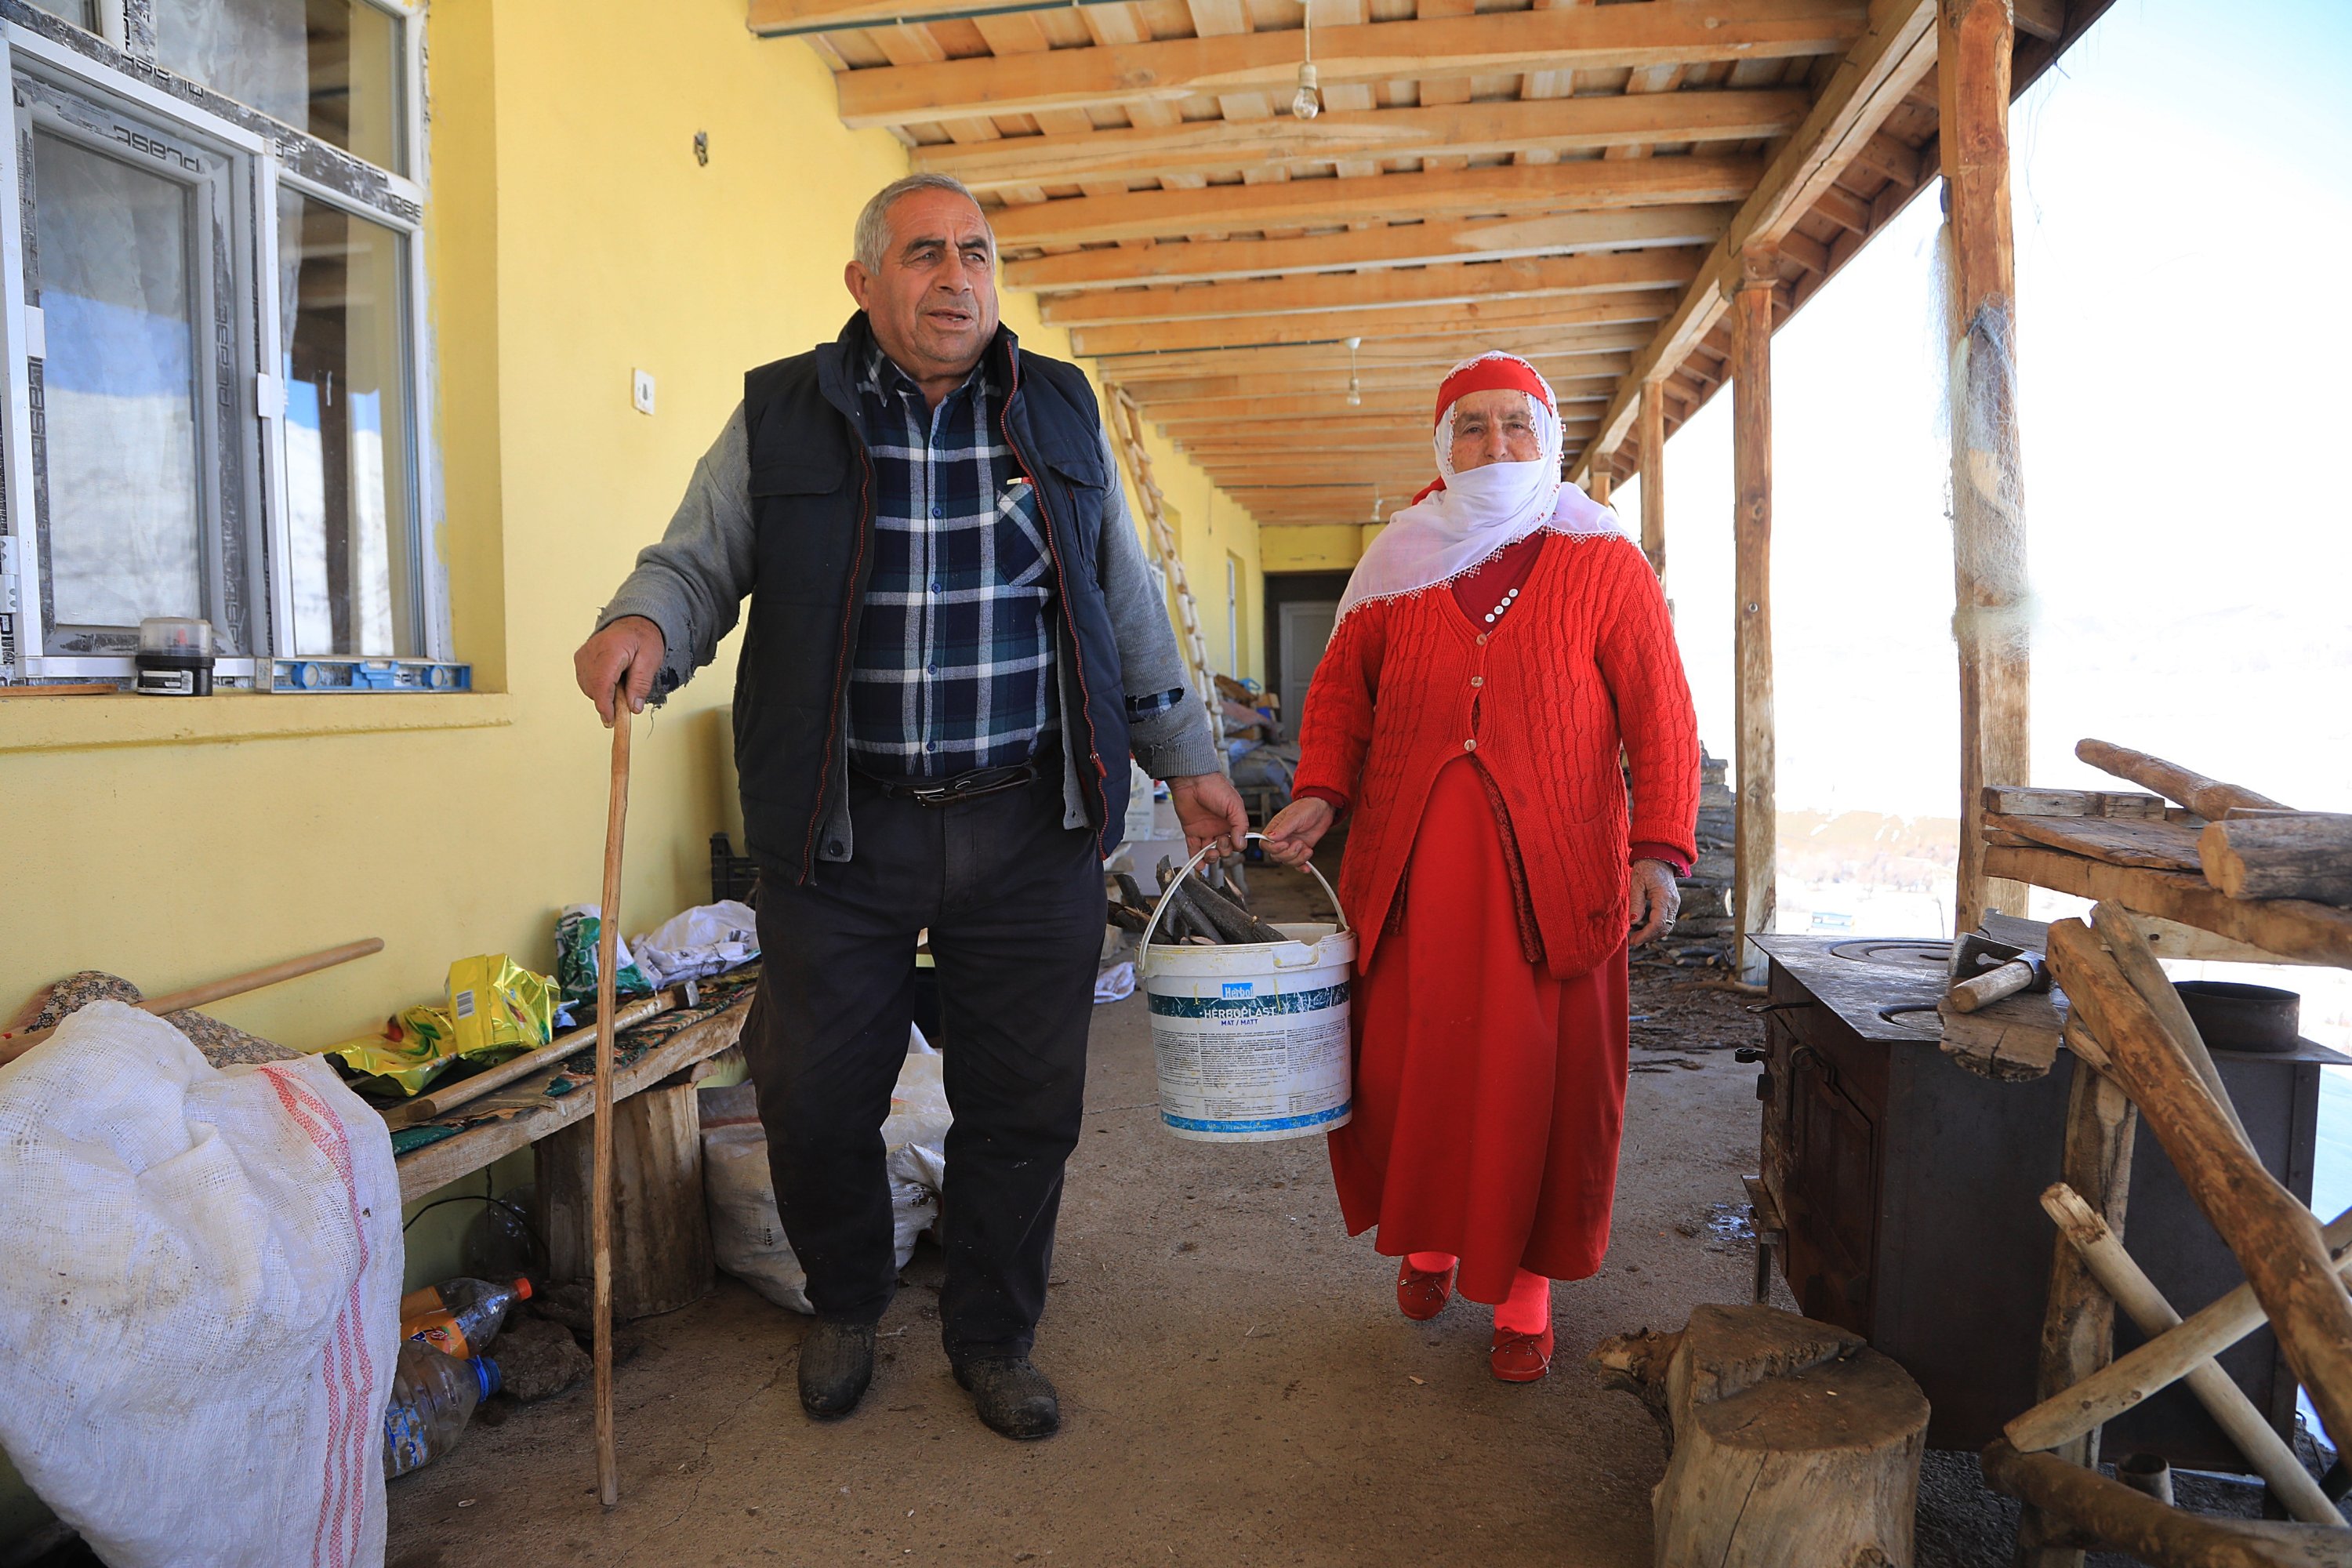 Wanita berbaju merah, Nafiye Caz, dan suaminya Hikmet Caz berpegangan tangan di balkon mereka, Bingöl, Turki, 10 Januari 2022. (AA Photo)